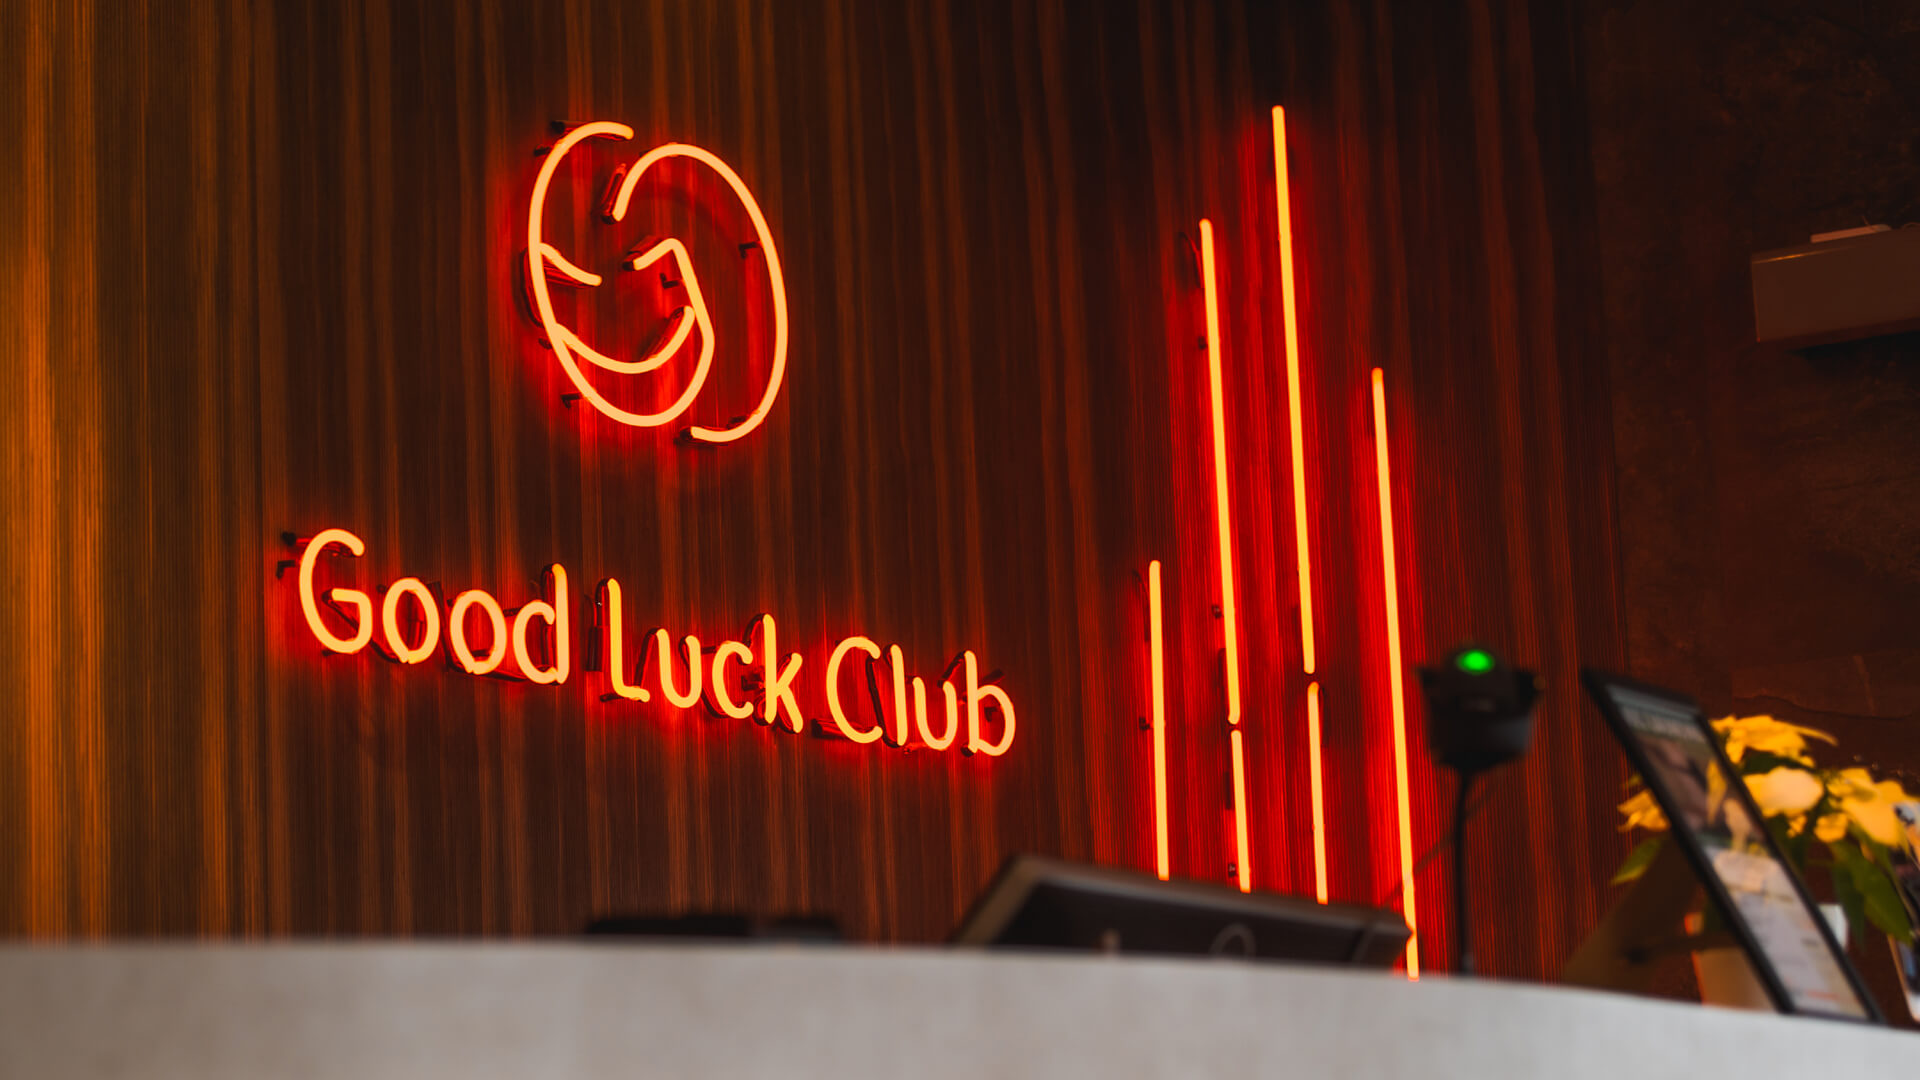 Good Luck Club - Rood neonbord in de receptie met het bedrijfslogo.